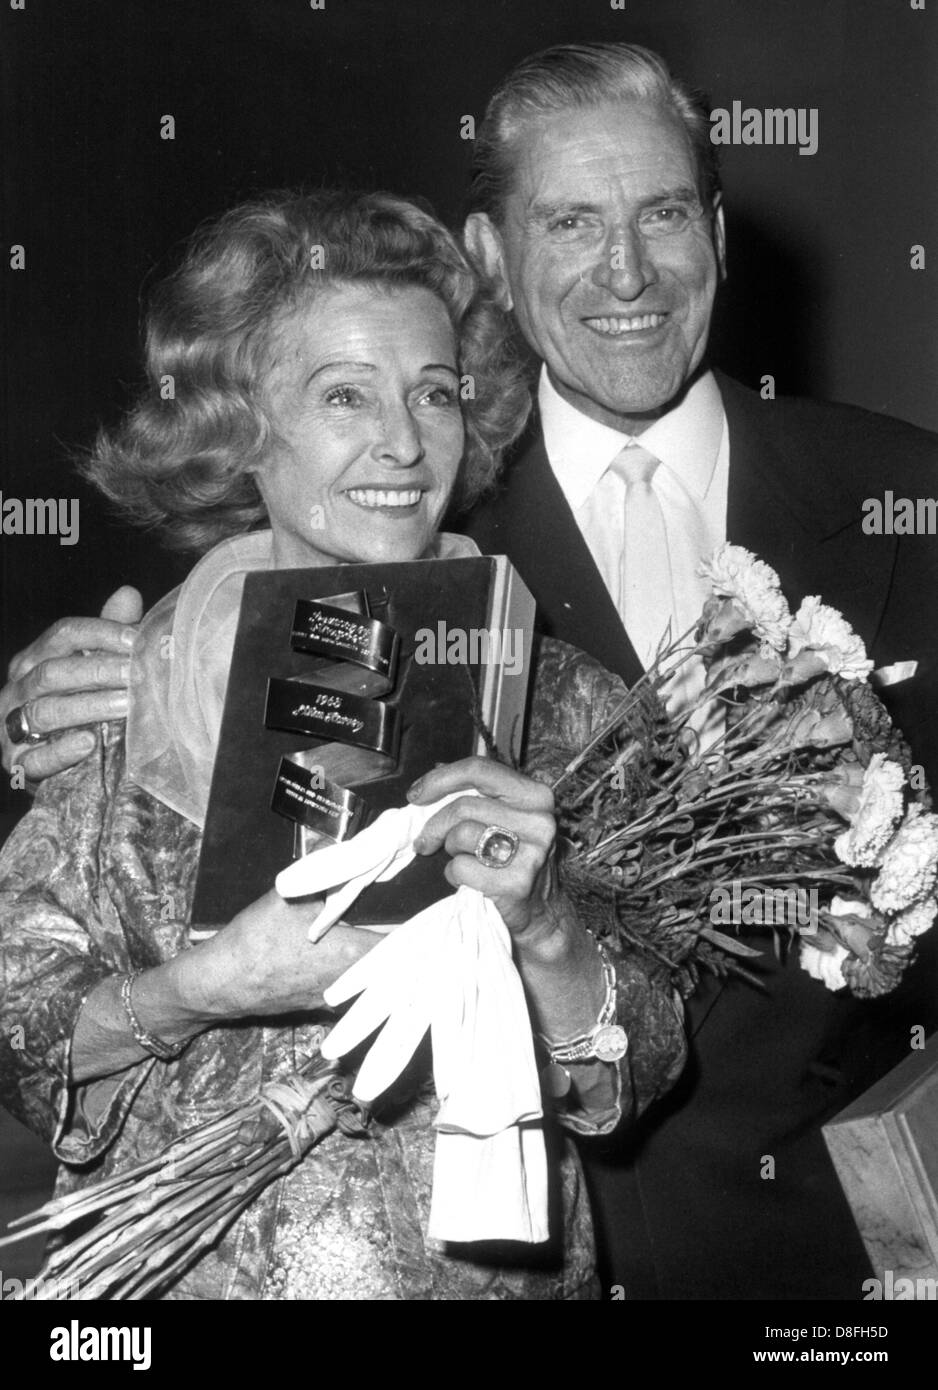 Lilian Harvey e Albrecht Schoenhals, che hanno ricevuto il "golden ribbon" per riconoscere i meriti del film tedesco, il 27 giugno 1965 a Berlino. Foto: Konrad Giehr +++(c) dpa - Relazione+++ Foto Stock